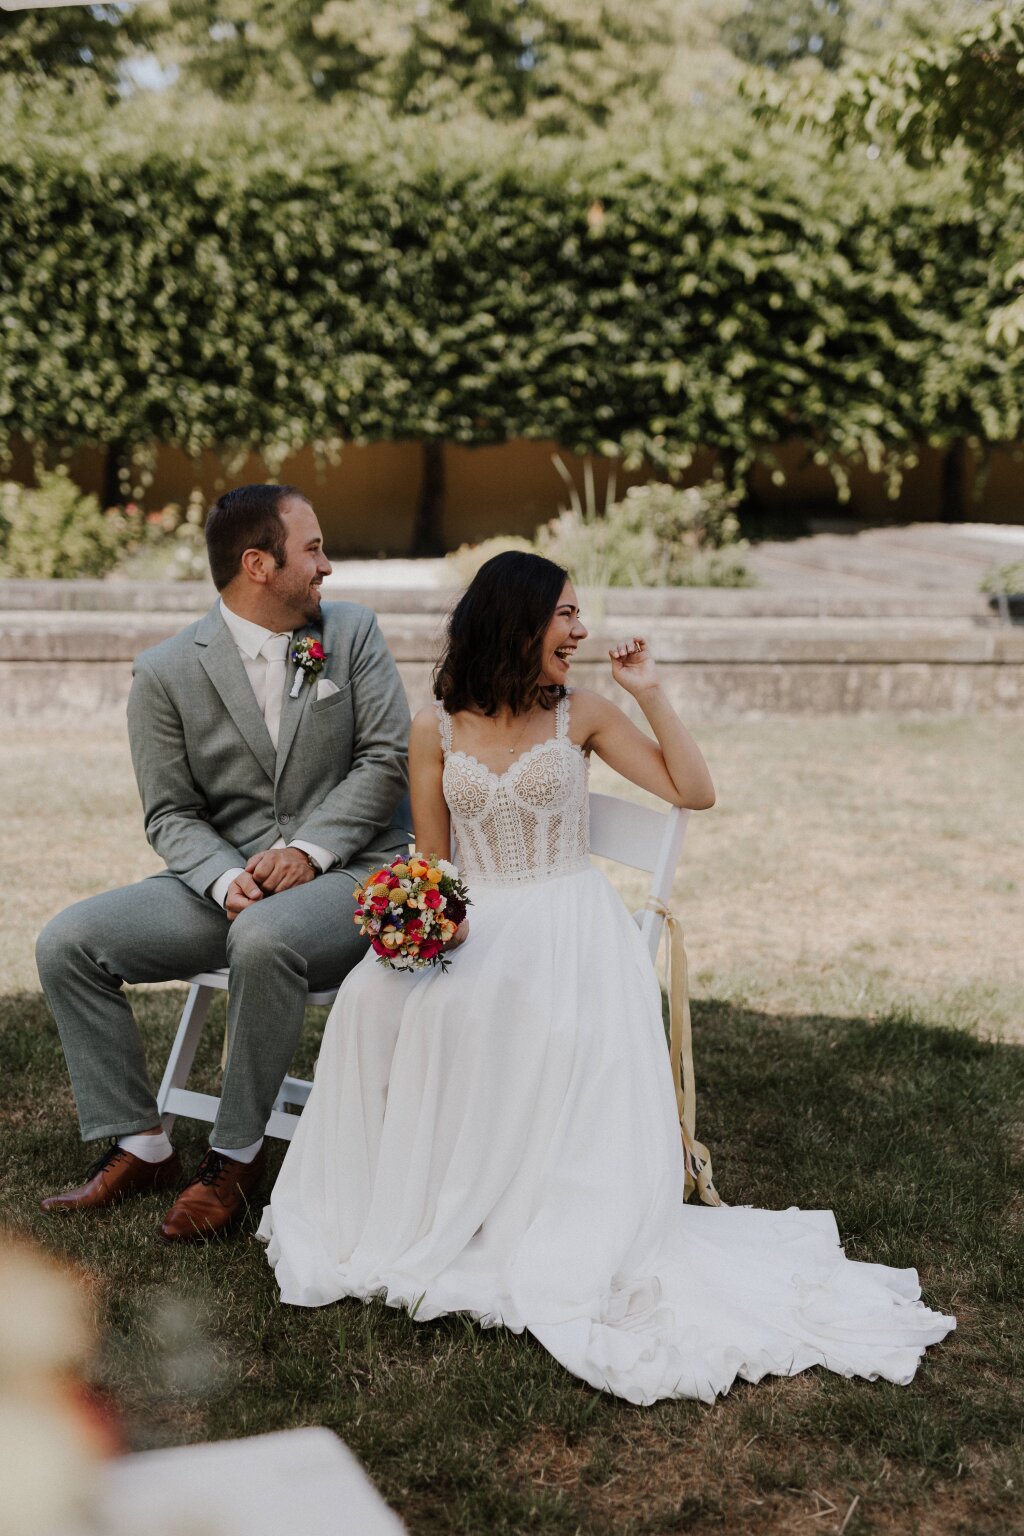 Lachendes Brautpaar während der Trauung auf der Wiese. 
Die Braut hat einen schönen bunten Strauß in der Hand. Im Vordergrund ist ein Teil des Trautisches zu erkennen.